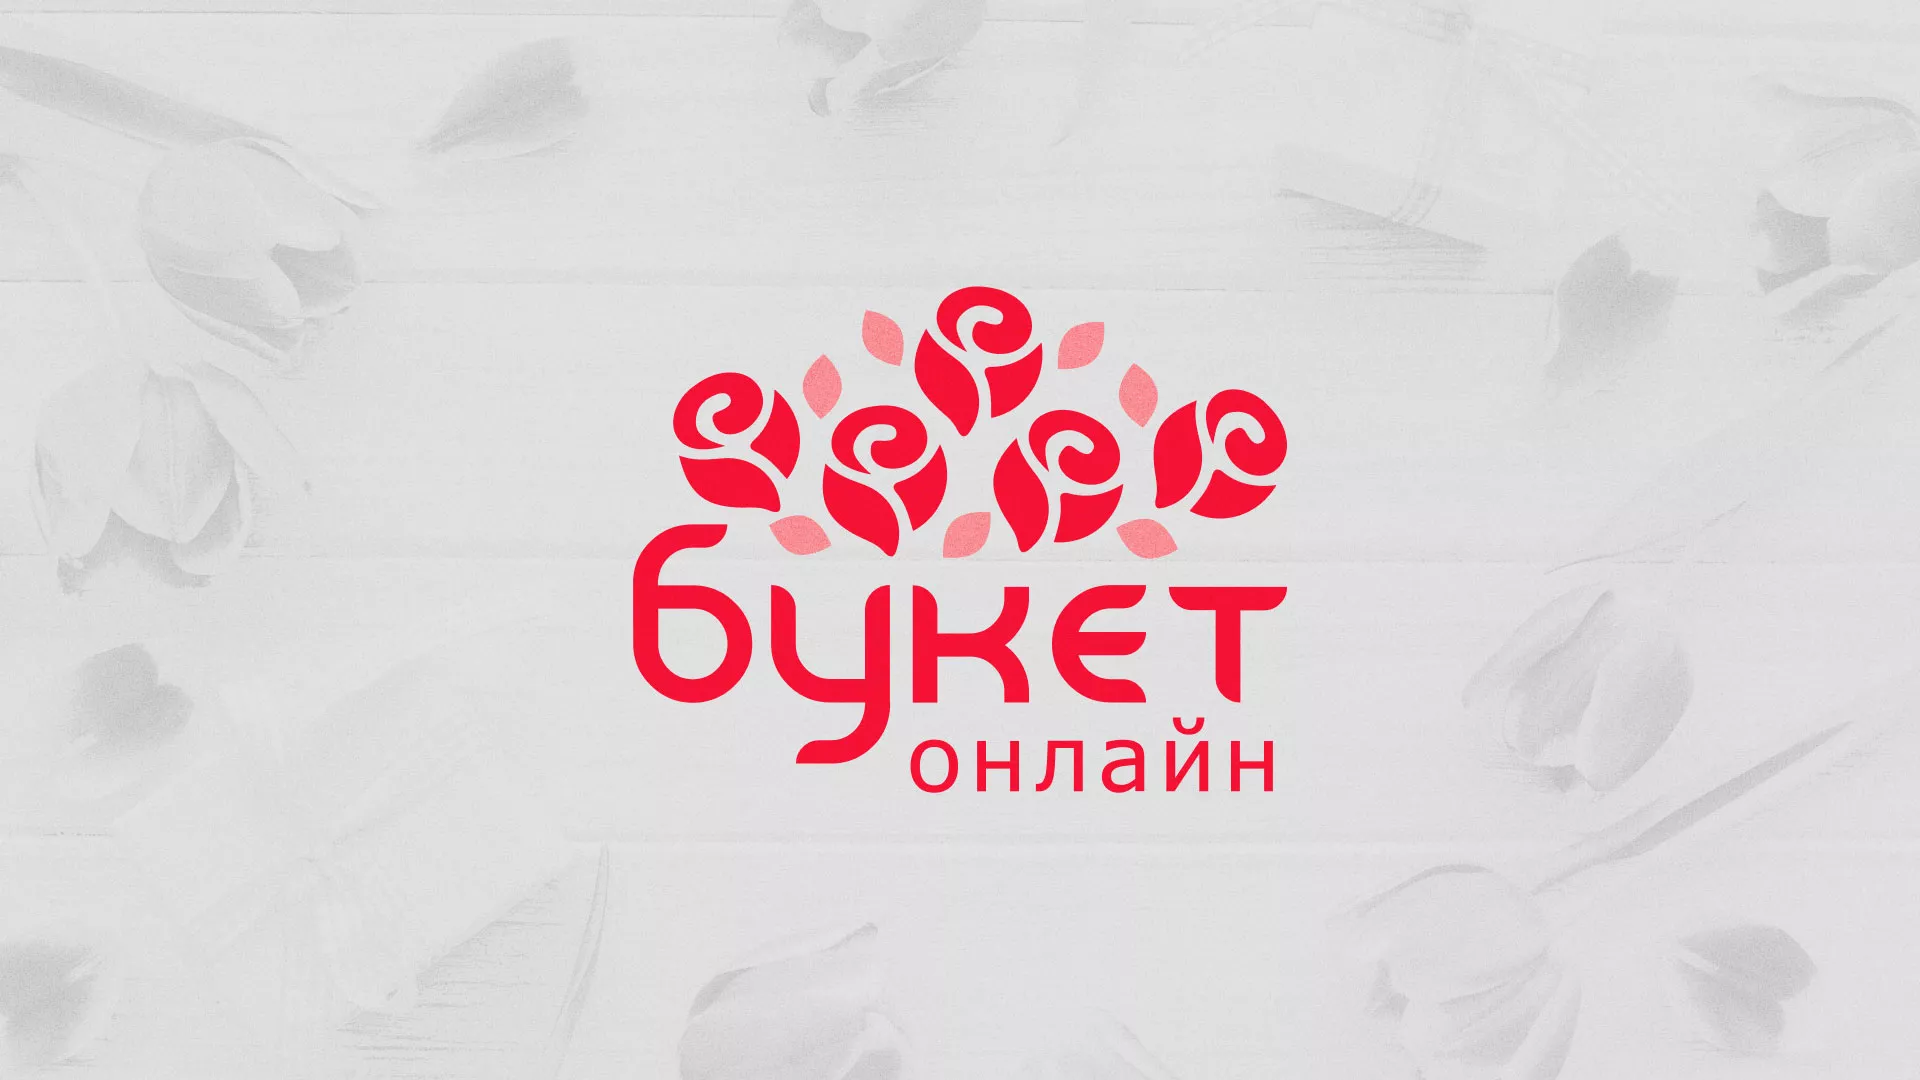 Создание интернет-магазина «Букет-онлайн» по цветам в Аше